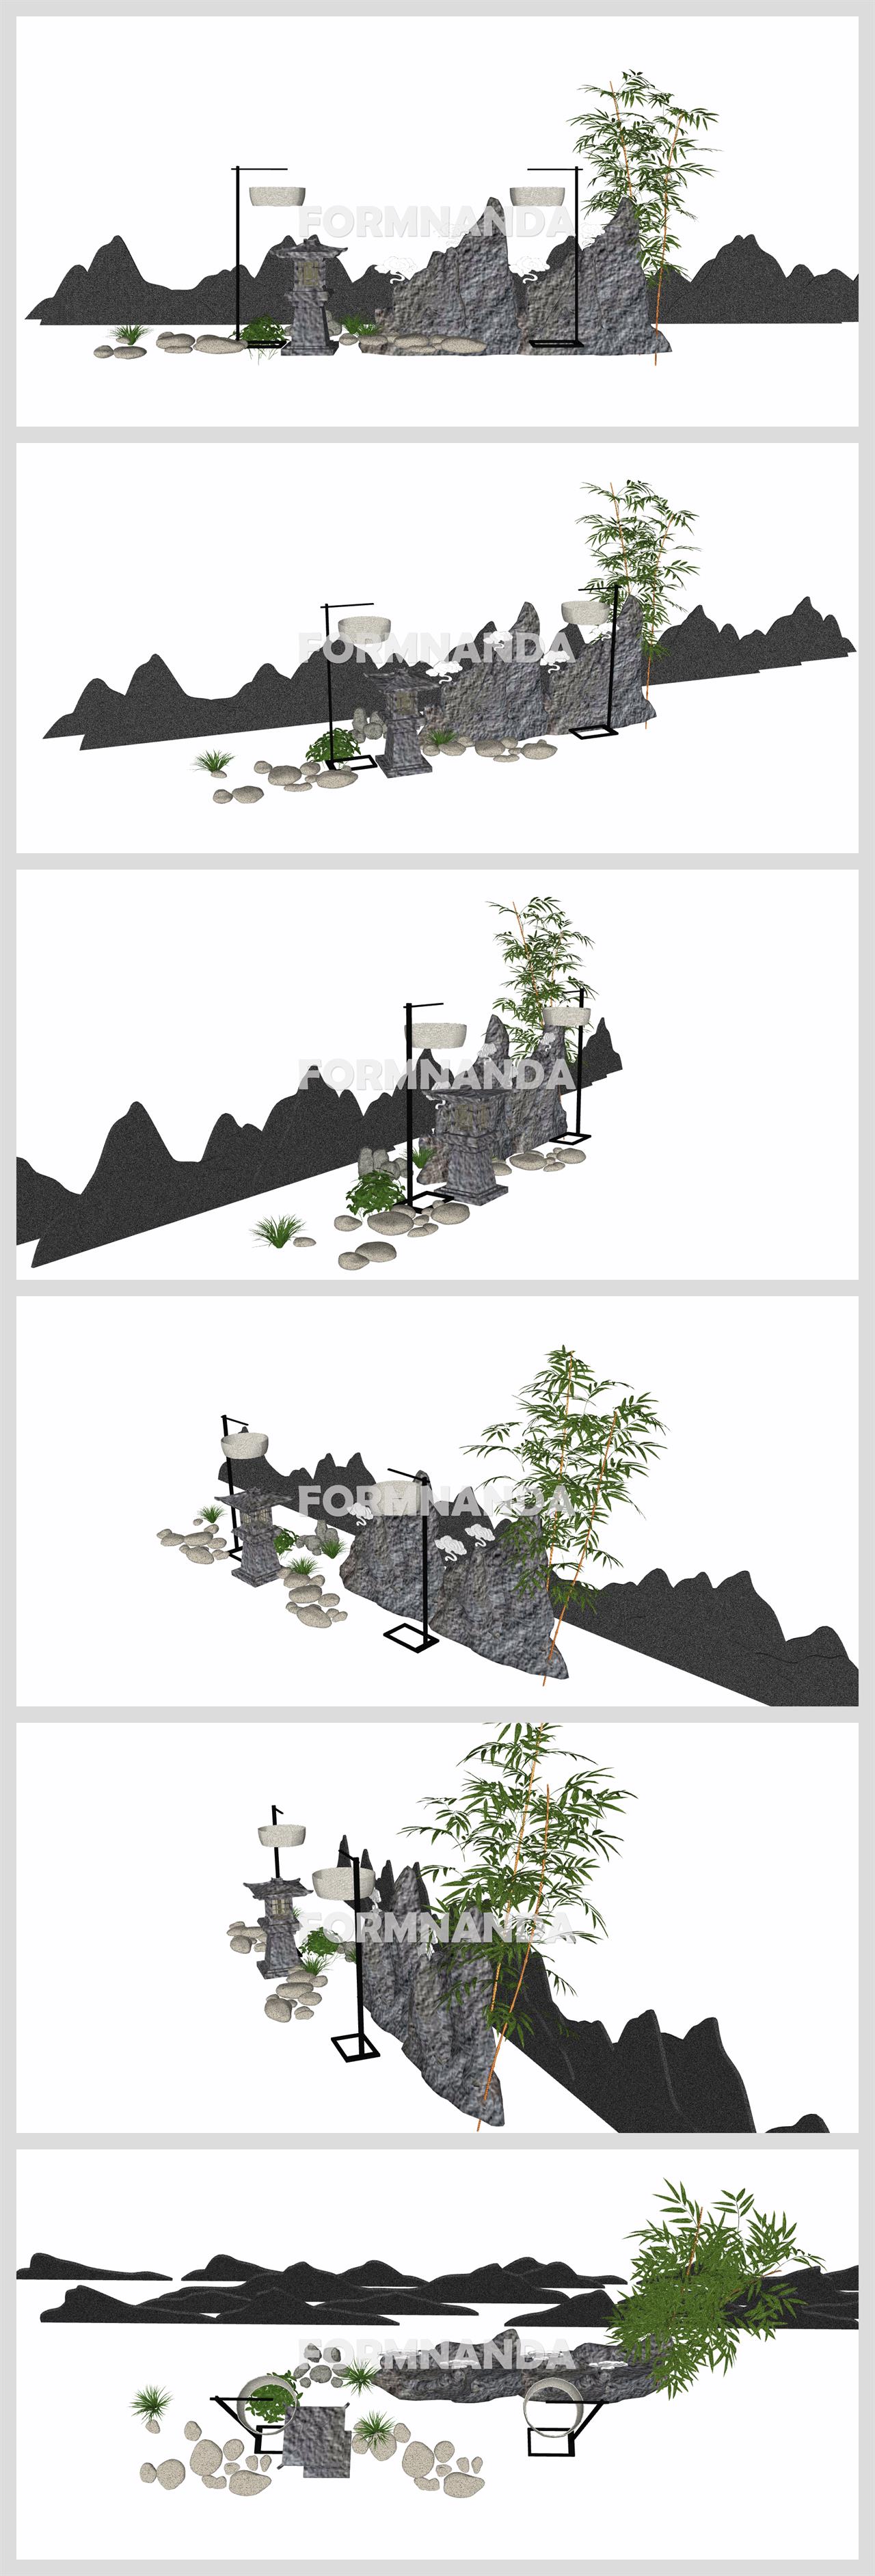 매력적인 정원조경 디자인 Sketchup 샘플 만들기 상세보기